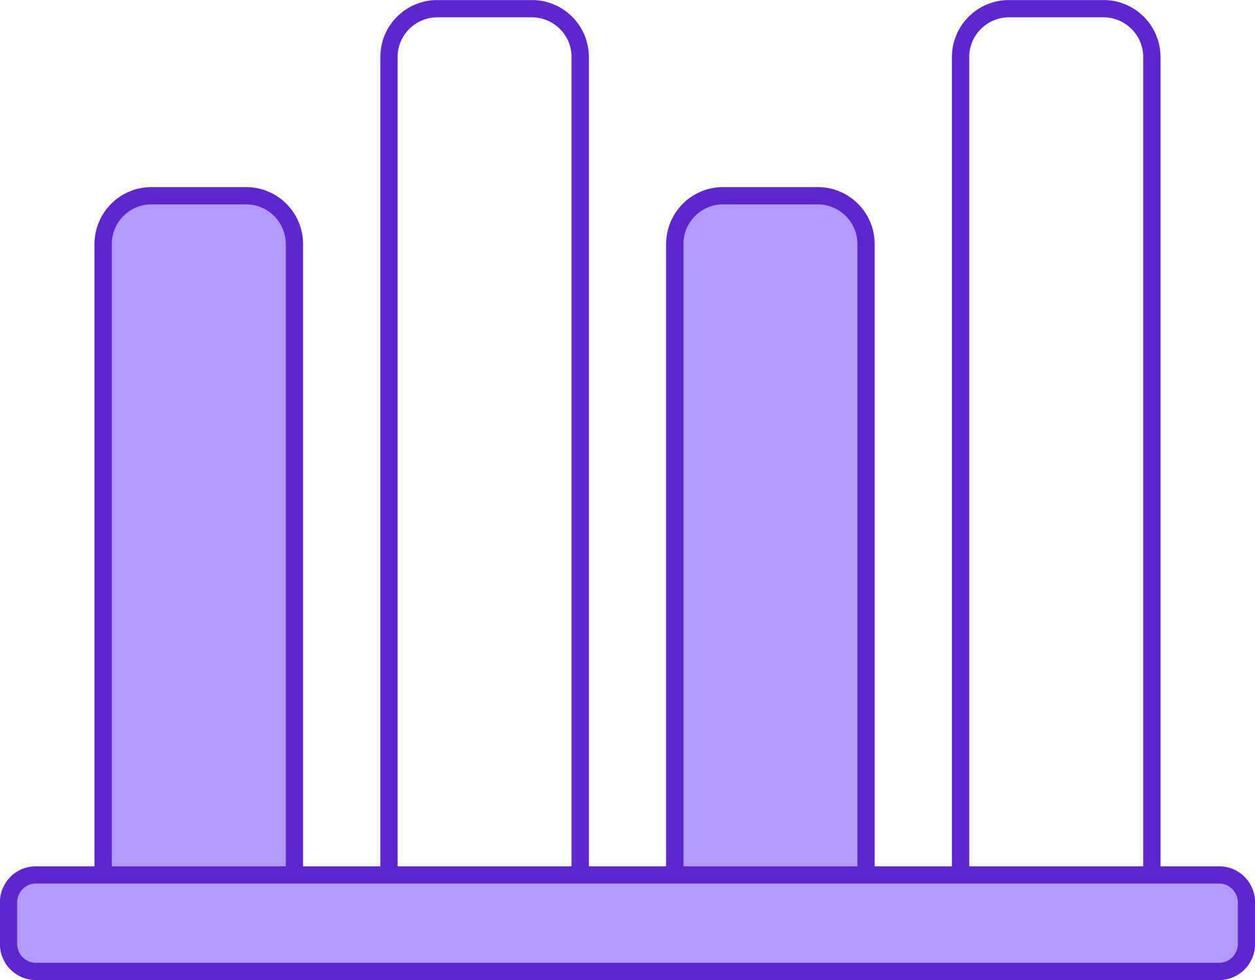 vier stap bar diagram tabel icoon in paars en wit kleur. vector